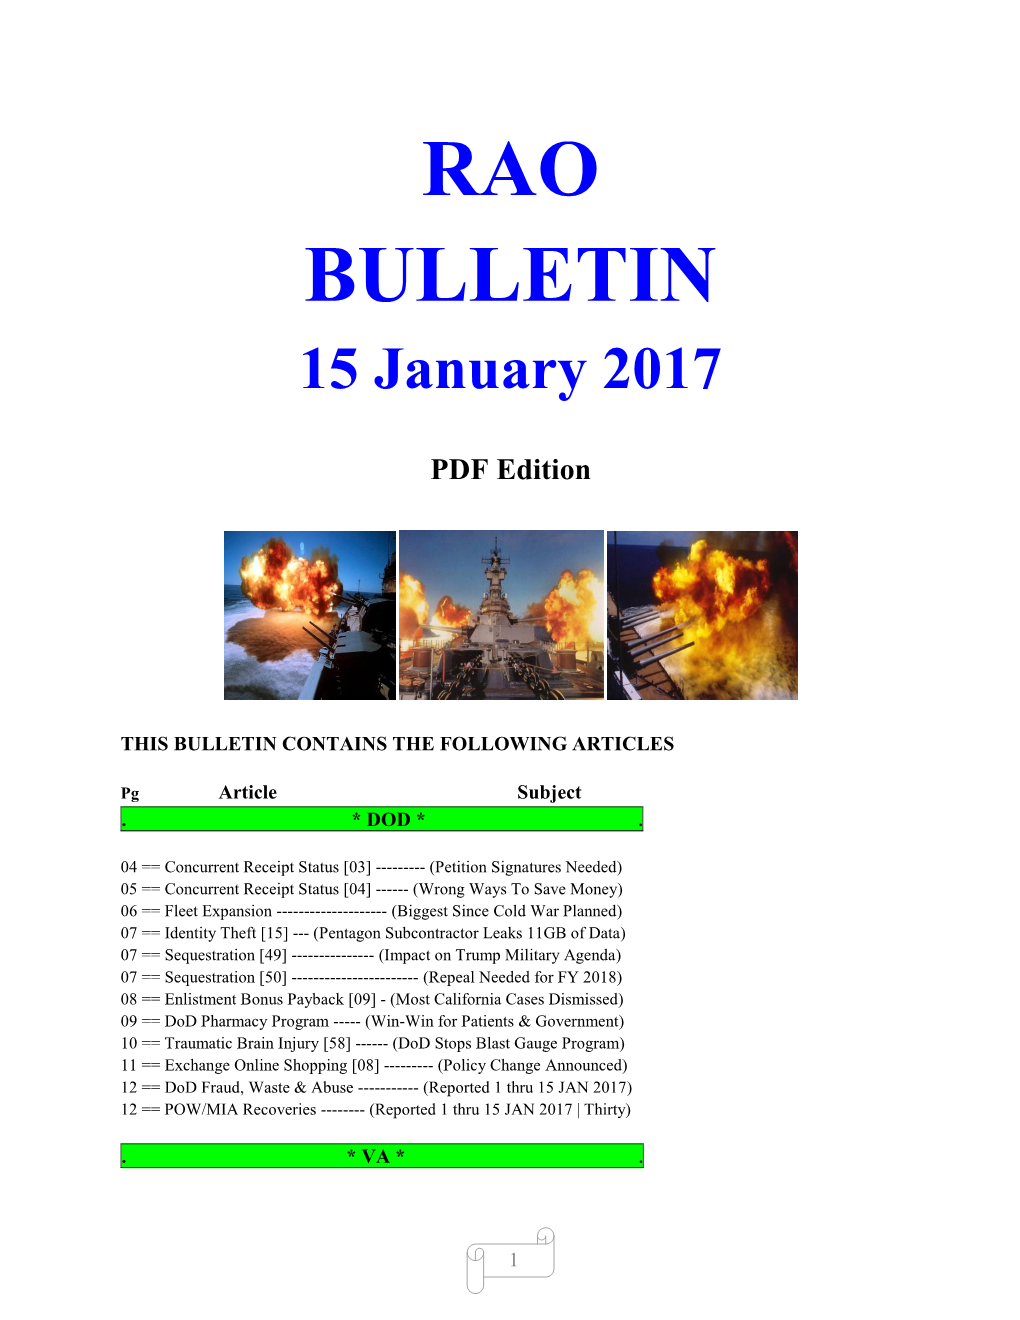 Bulletin 170115 (PDF Edition)